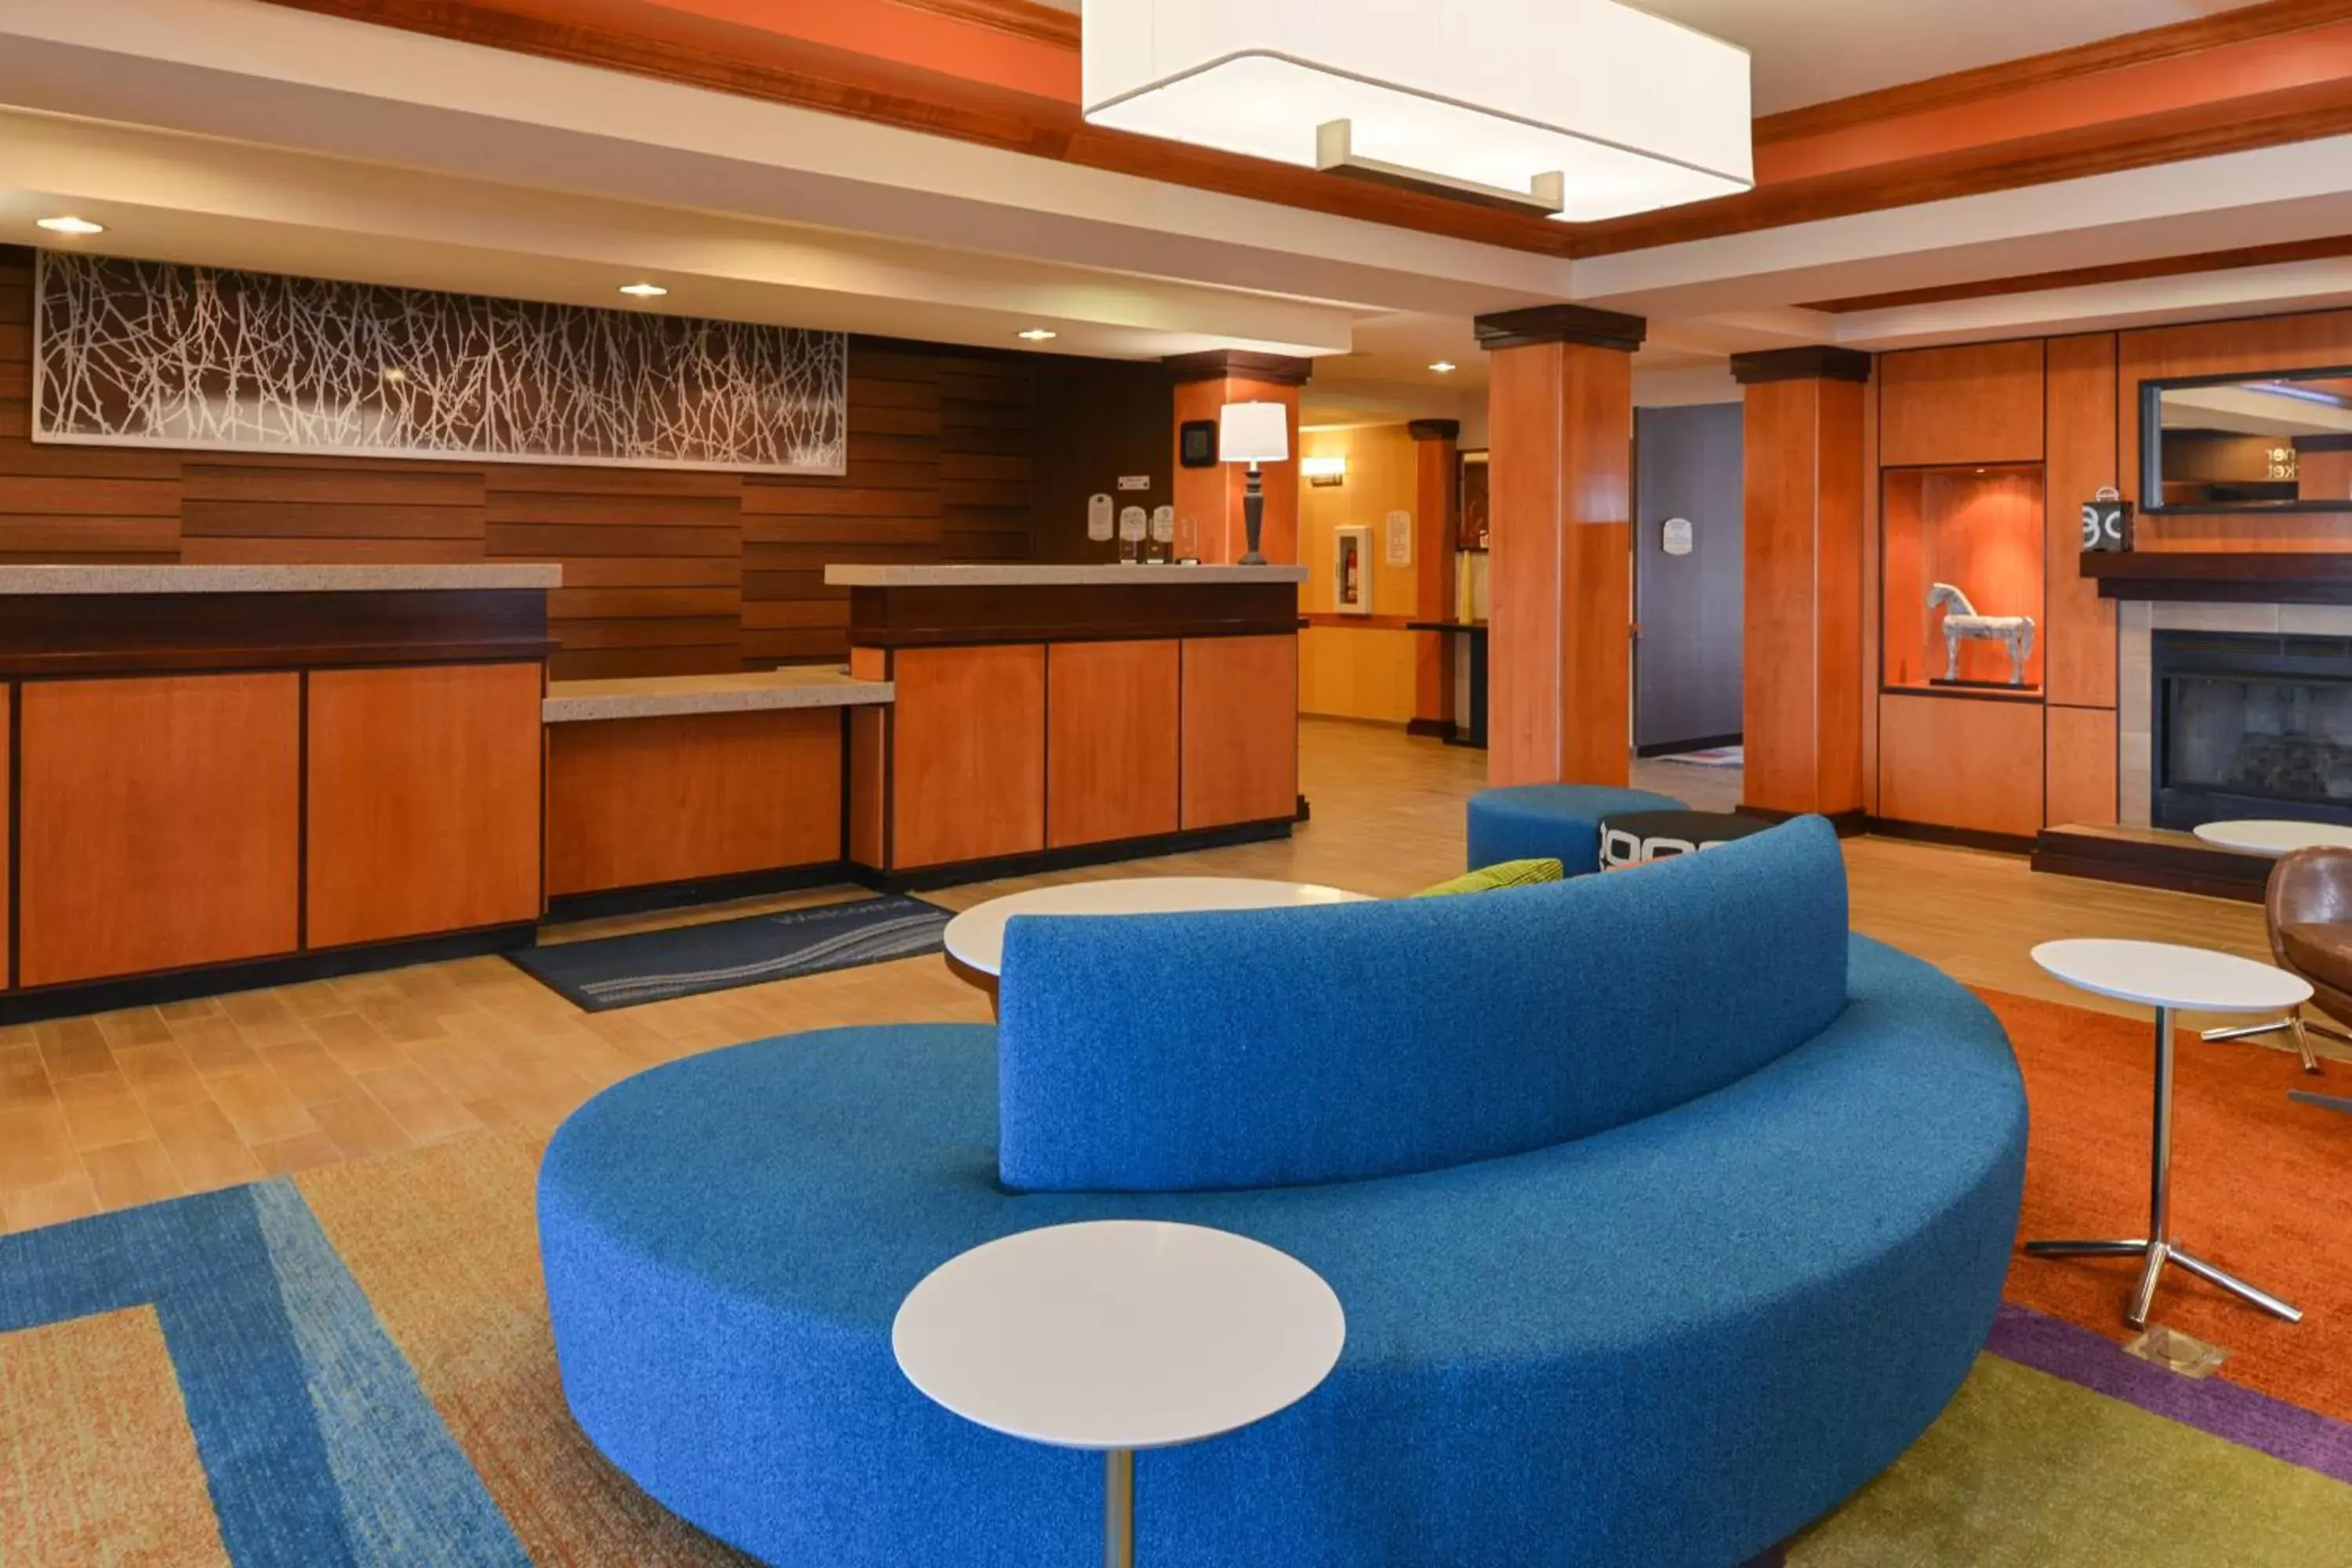 Lobby or reception, Lobby/Reception in Fairfield Inn & Suites Bloomington